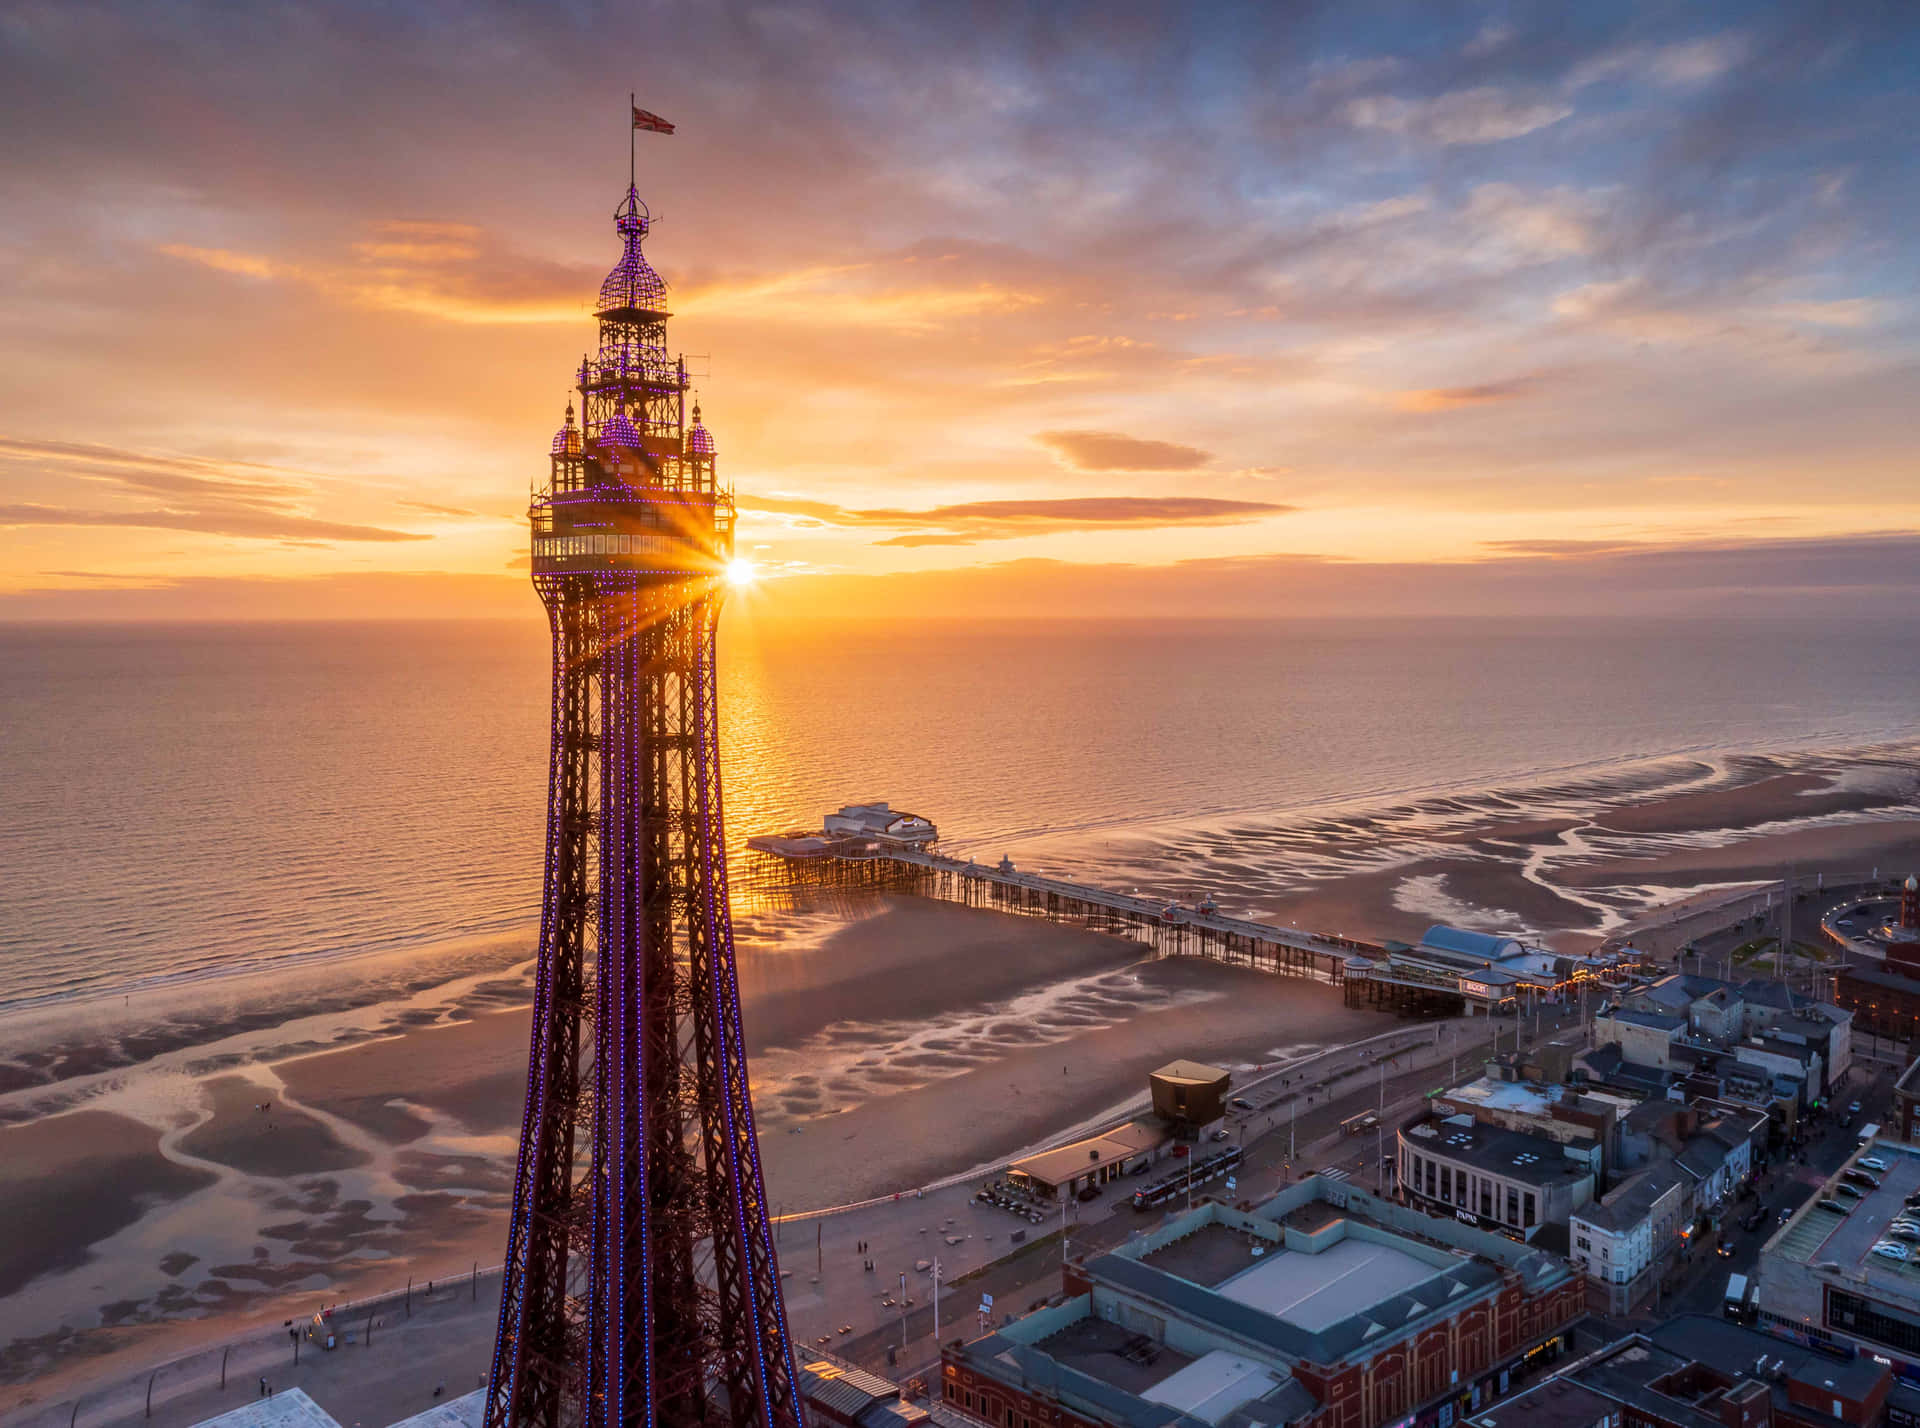 Blackpooltower Und Der Strand Bei Sonnenuntergang Wallpaper